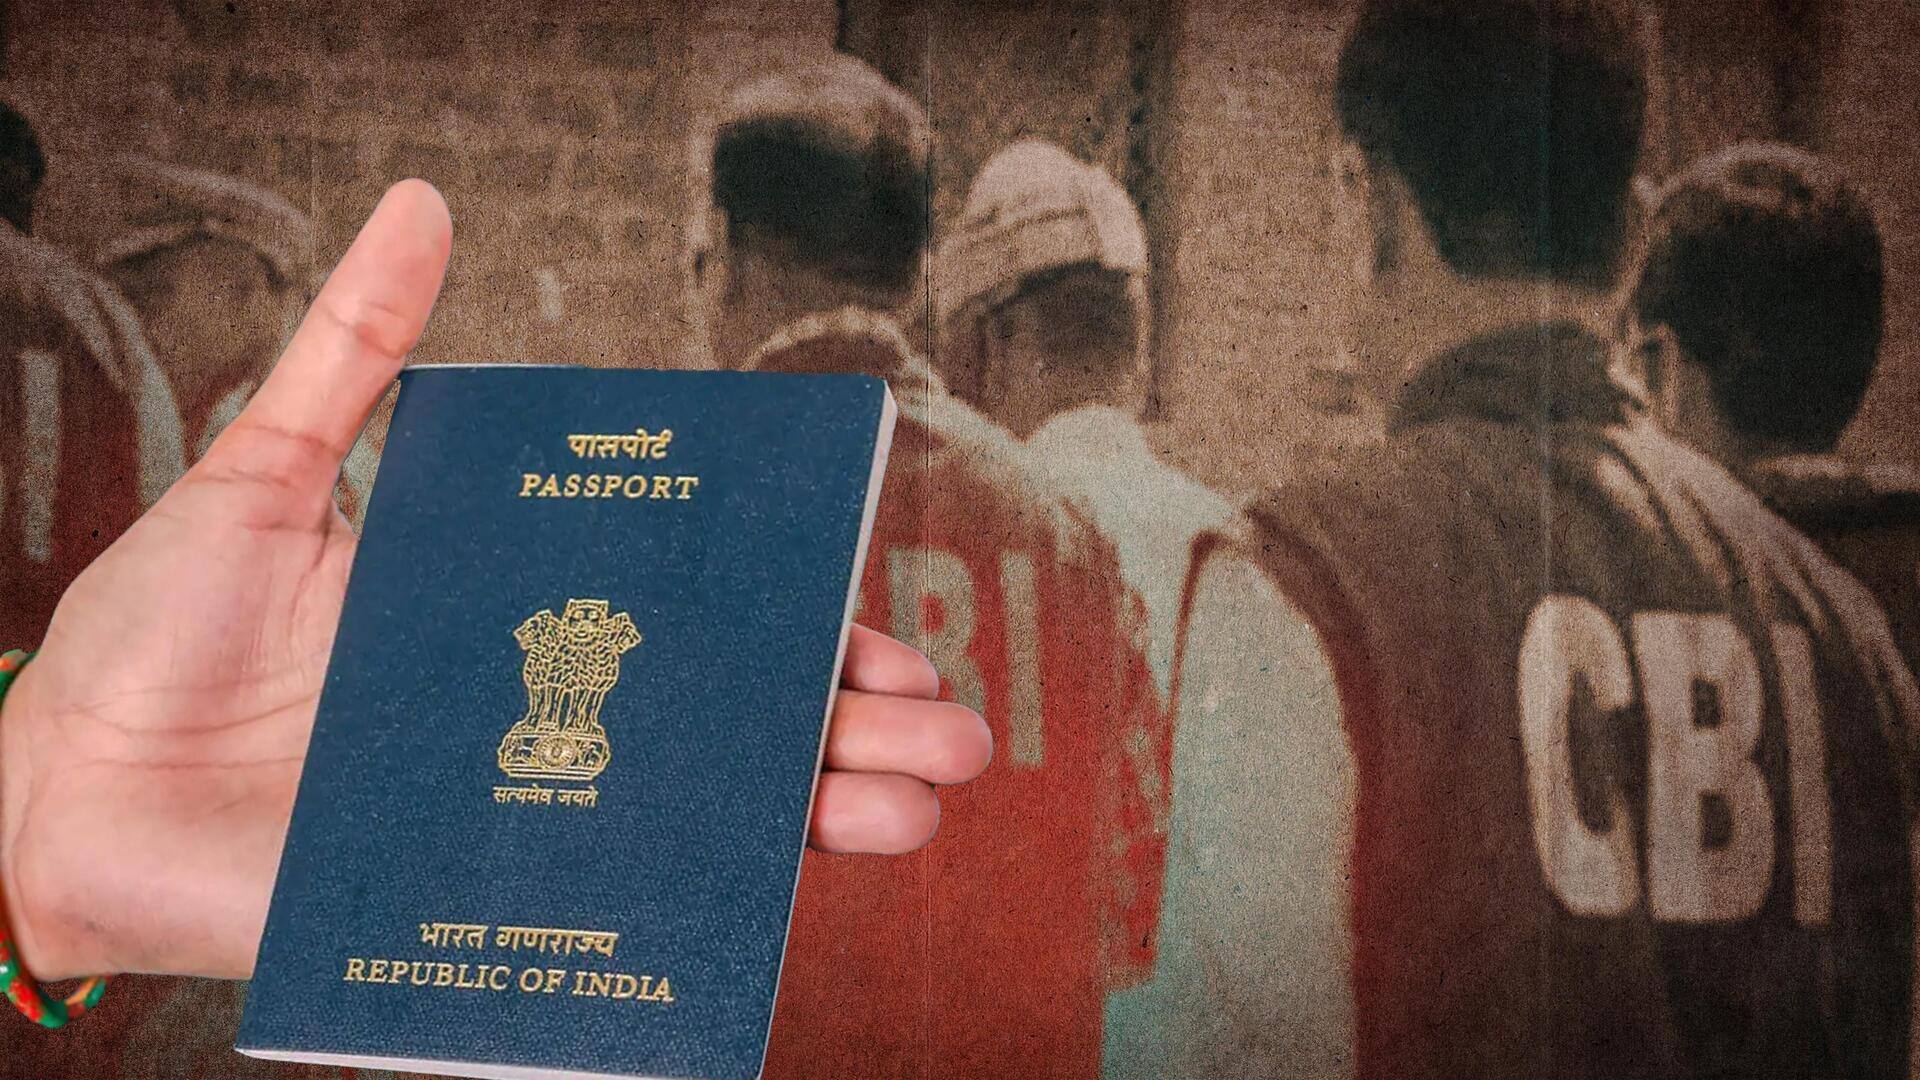 CBI busts passport racket in Sikkim, Bengal; 50 locations raided